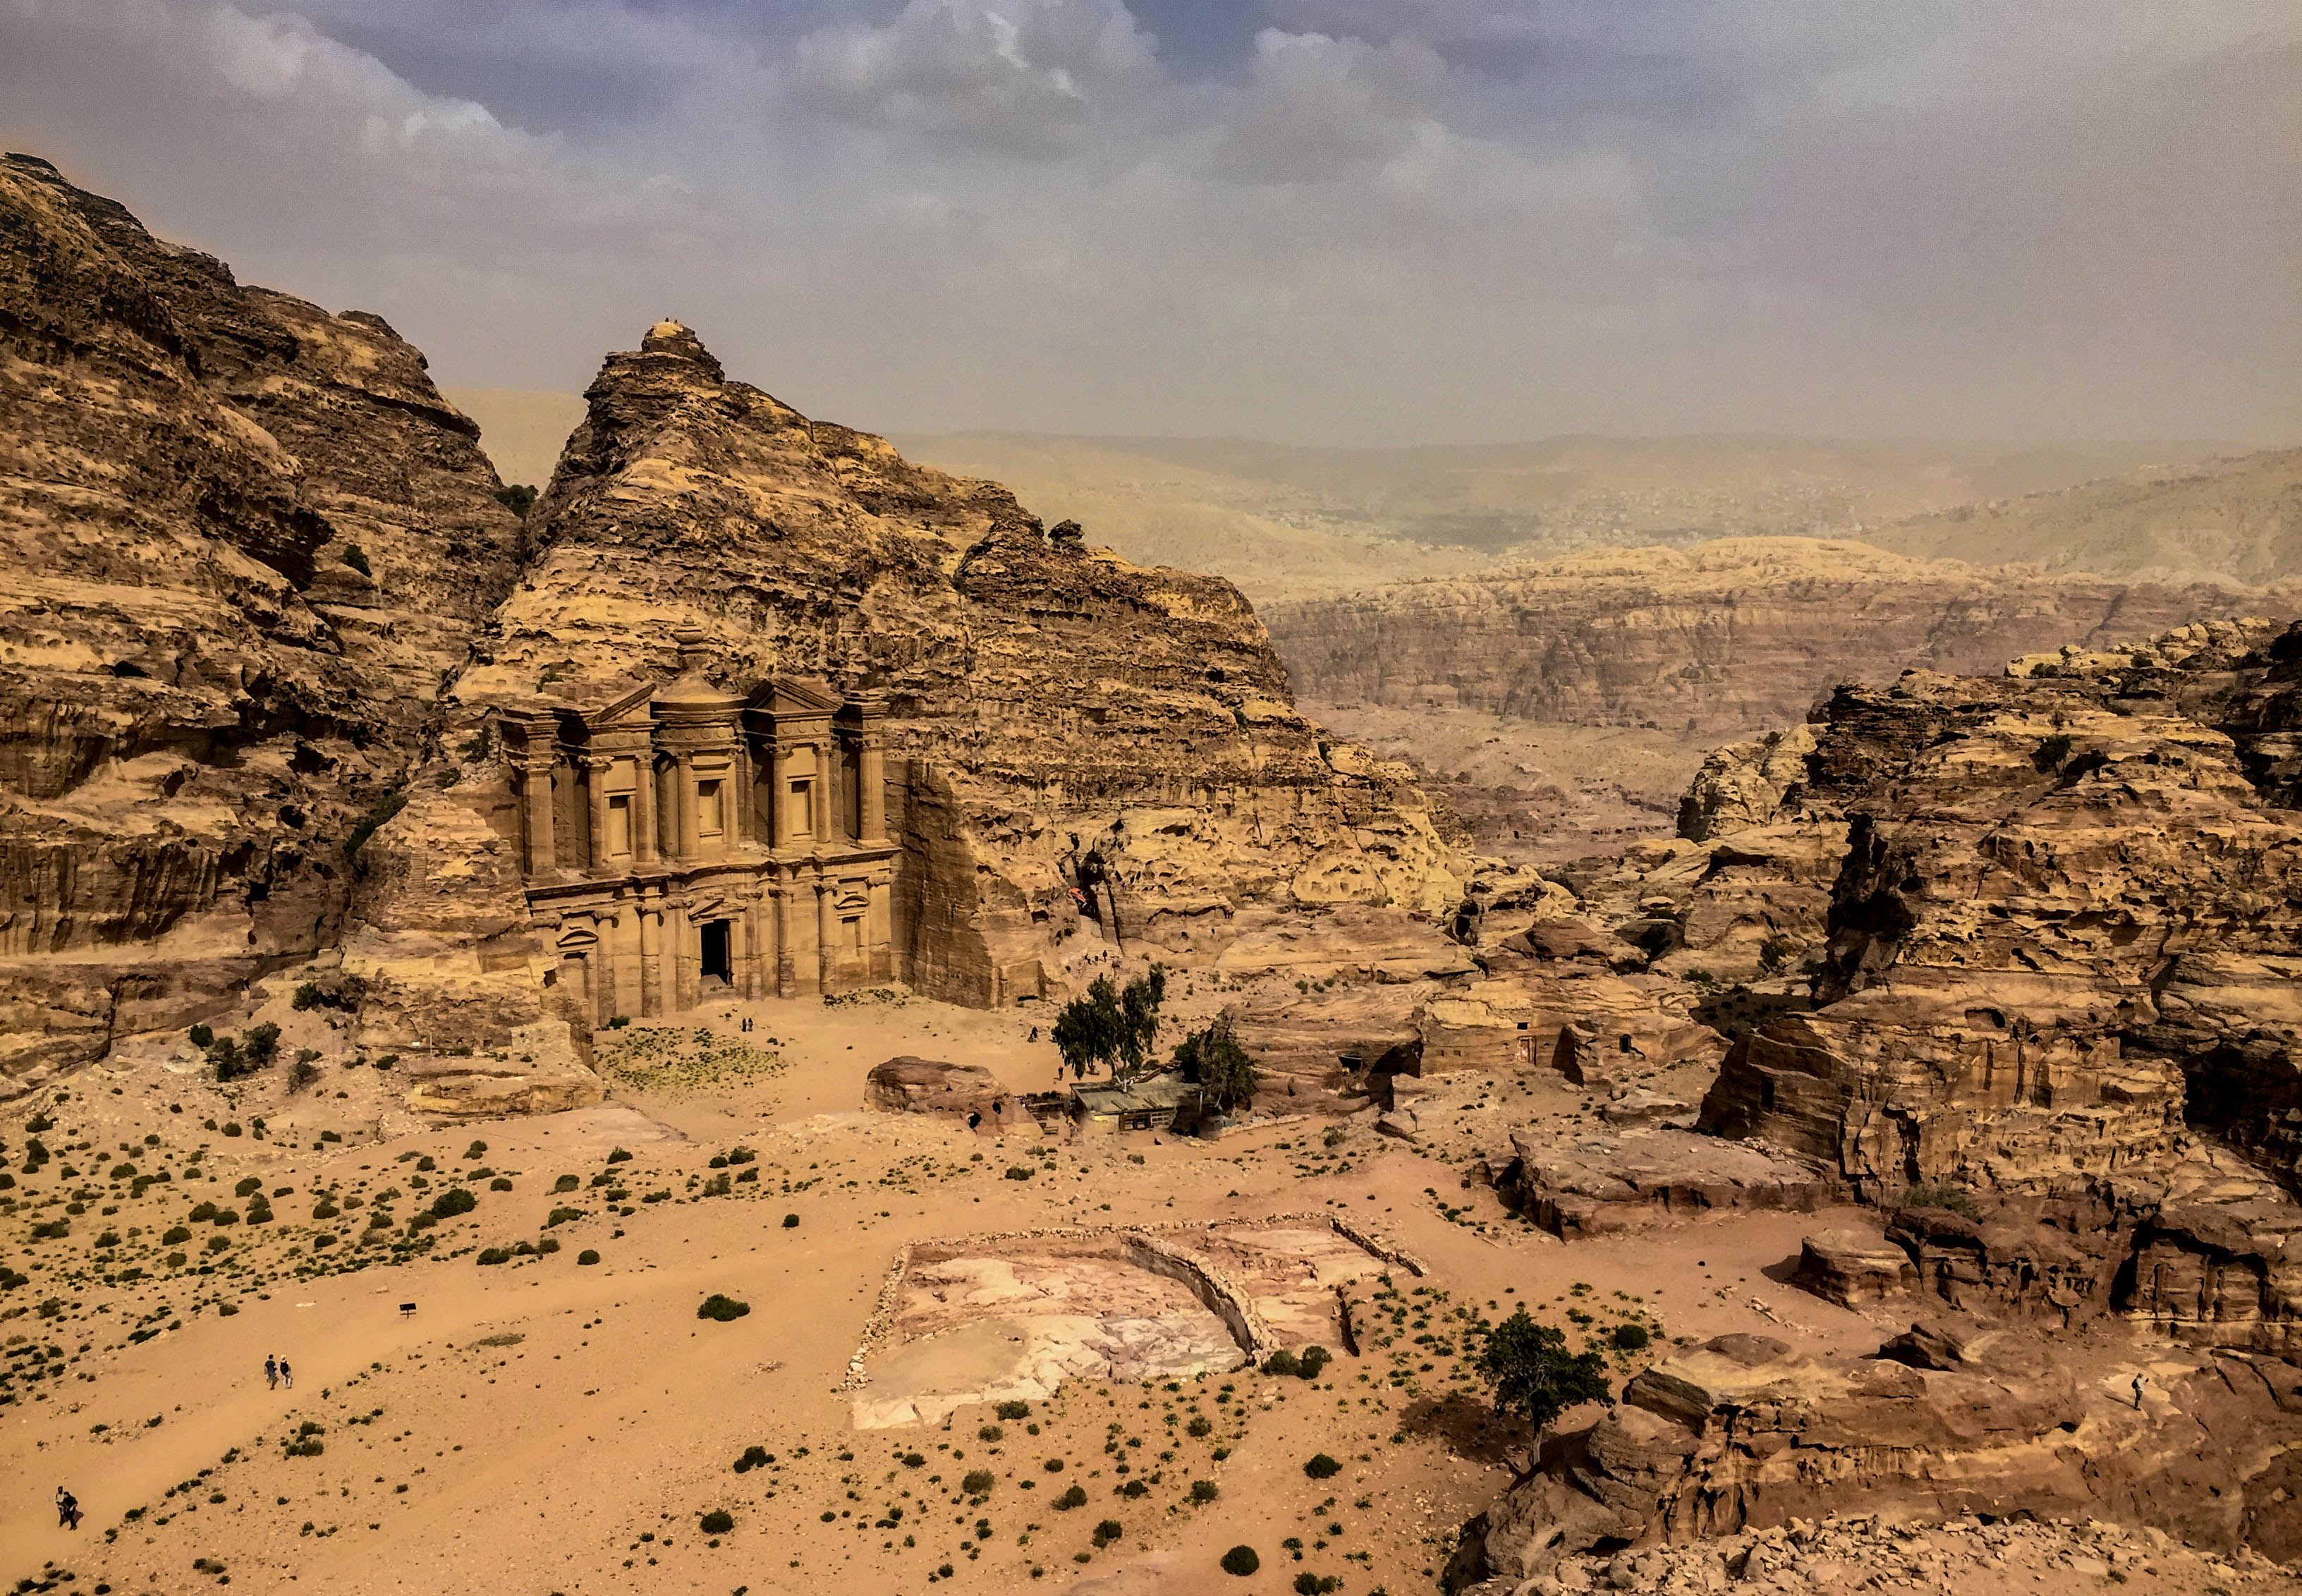 Overzichtsbeeld van de vallei met de bibliotheek Petra in Jordanië